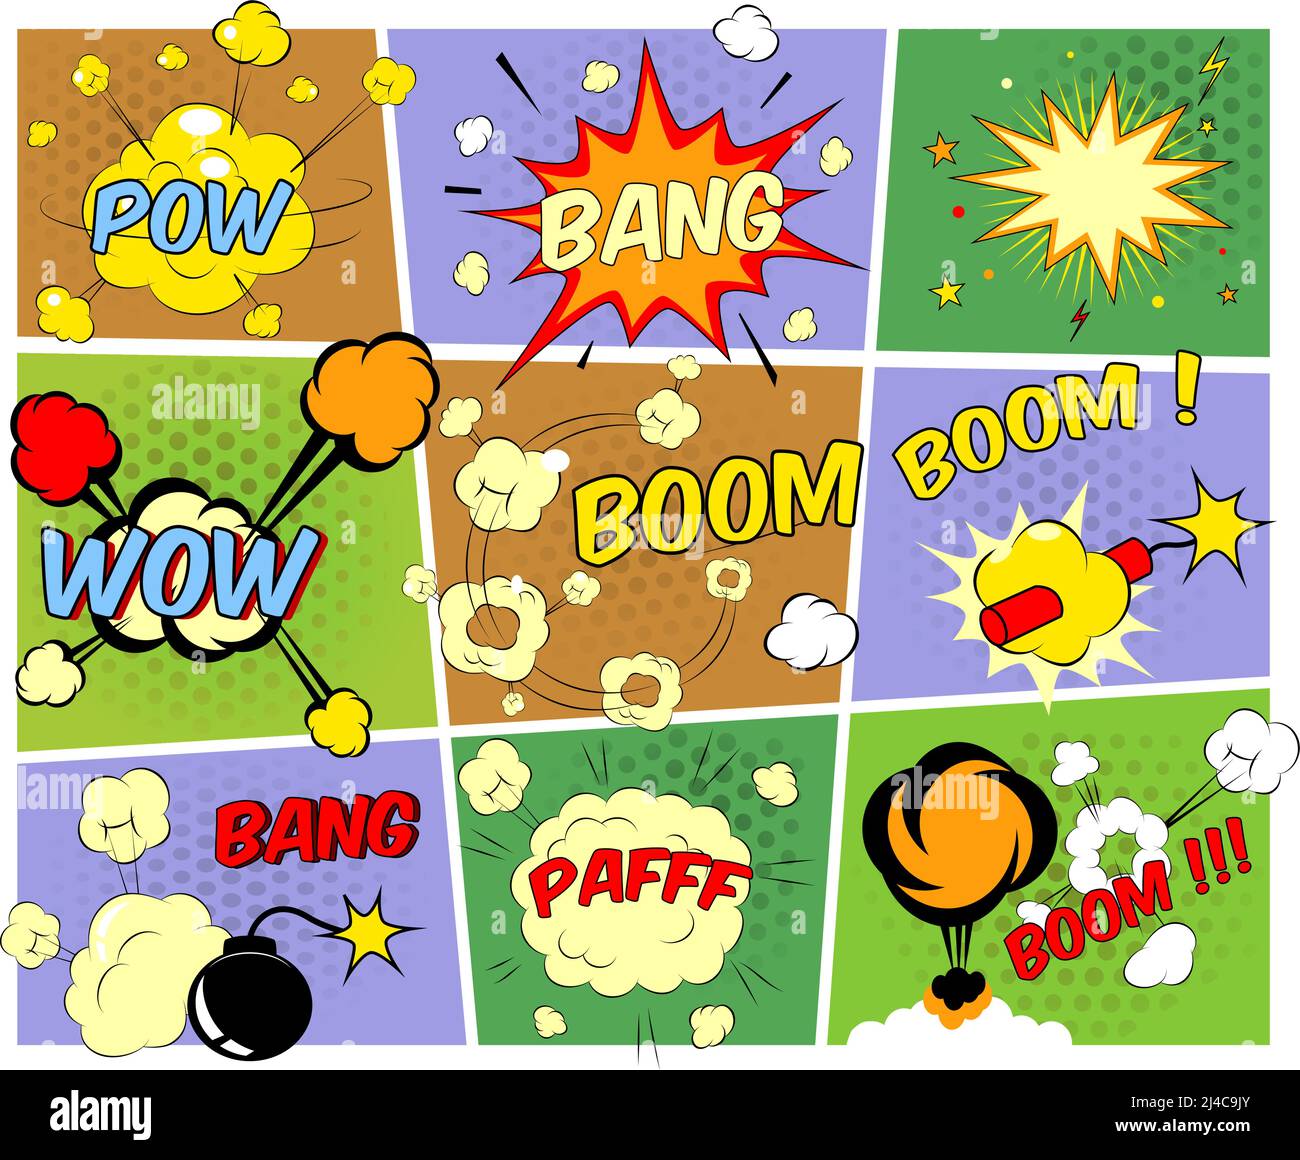 Bright mock-up colorati di fumetti fumetti che raffigurano un varietà di suoni esplosioni bandg pfaff pow wow boom con motion puffs e st Illustrazione Vettoriale